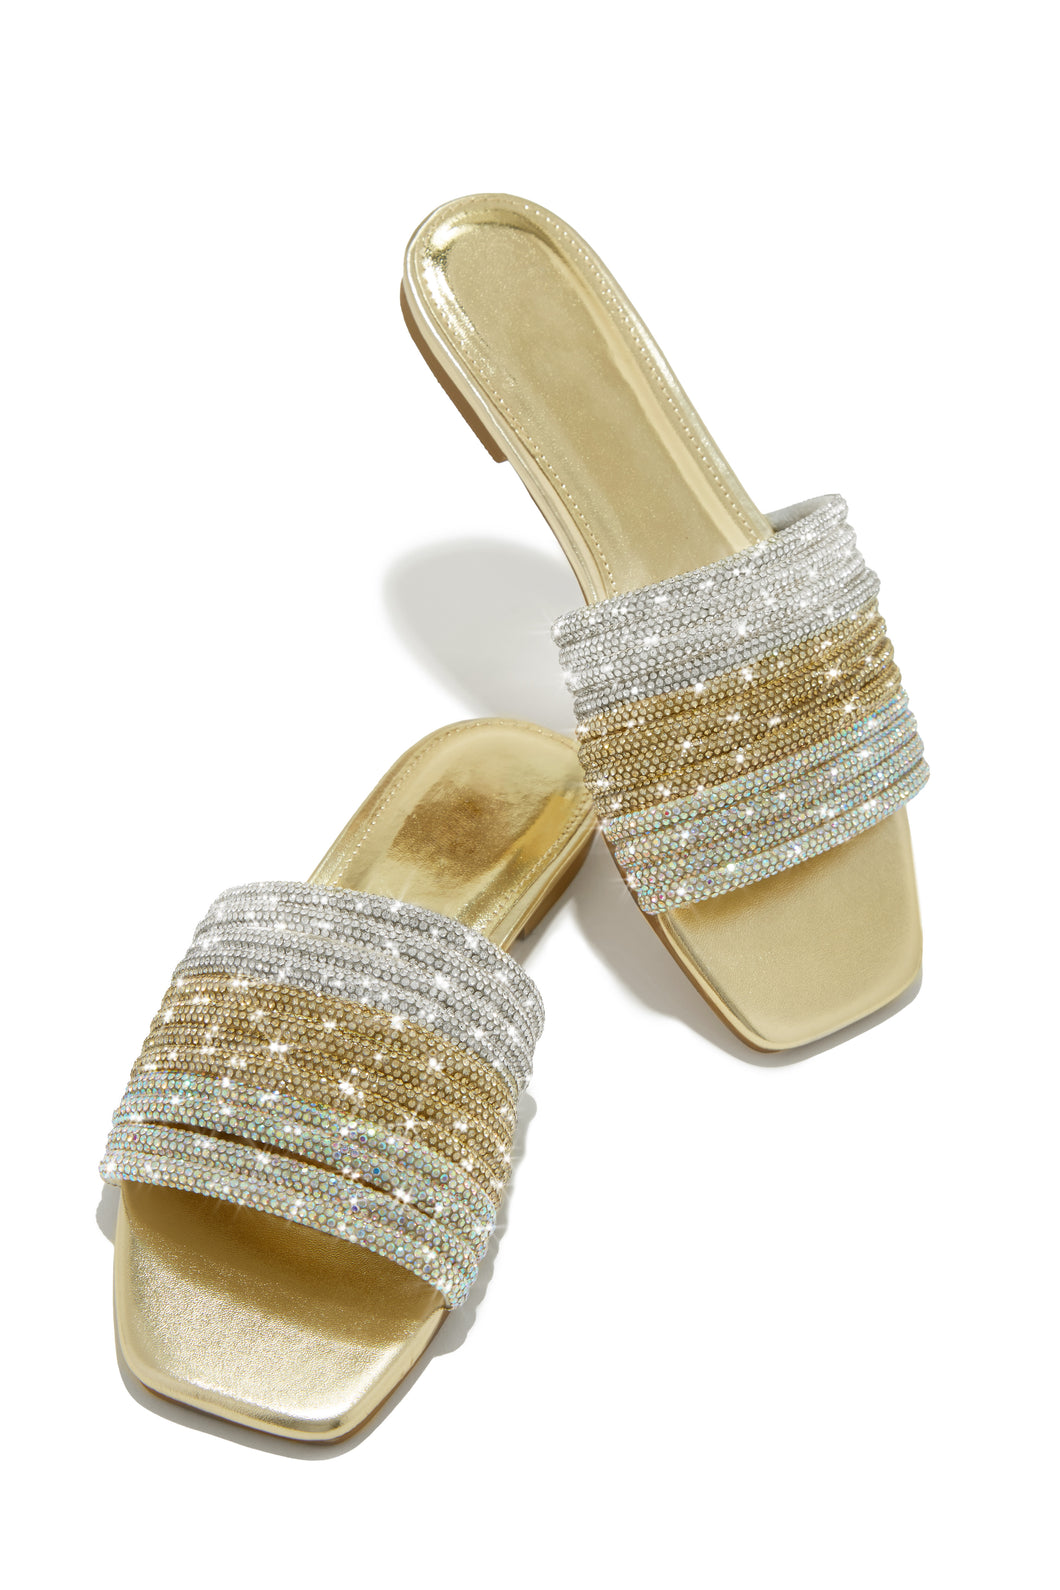 Luxe Resort Wear Embellished Slip On Sandals - Gold